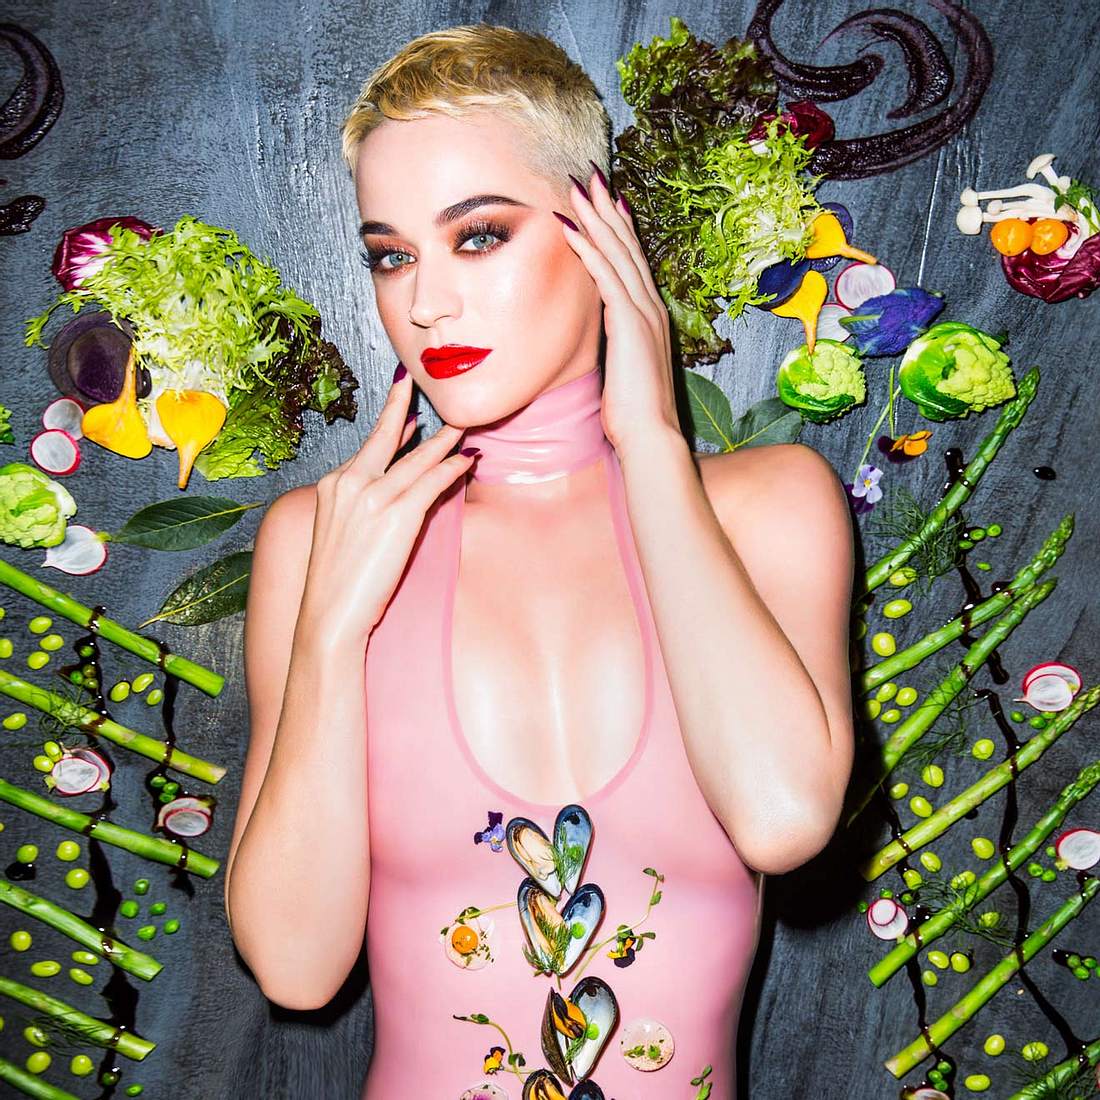 Katy Perry hat 74,6 Millionen Abonnenten auf Instagram.